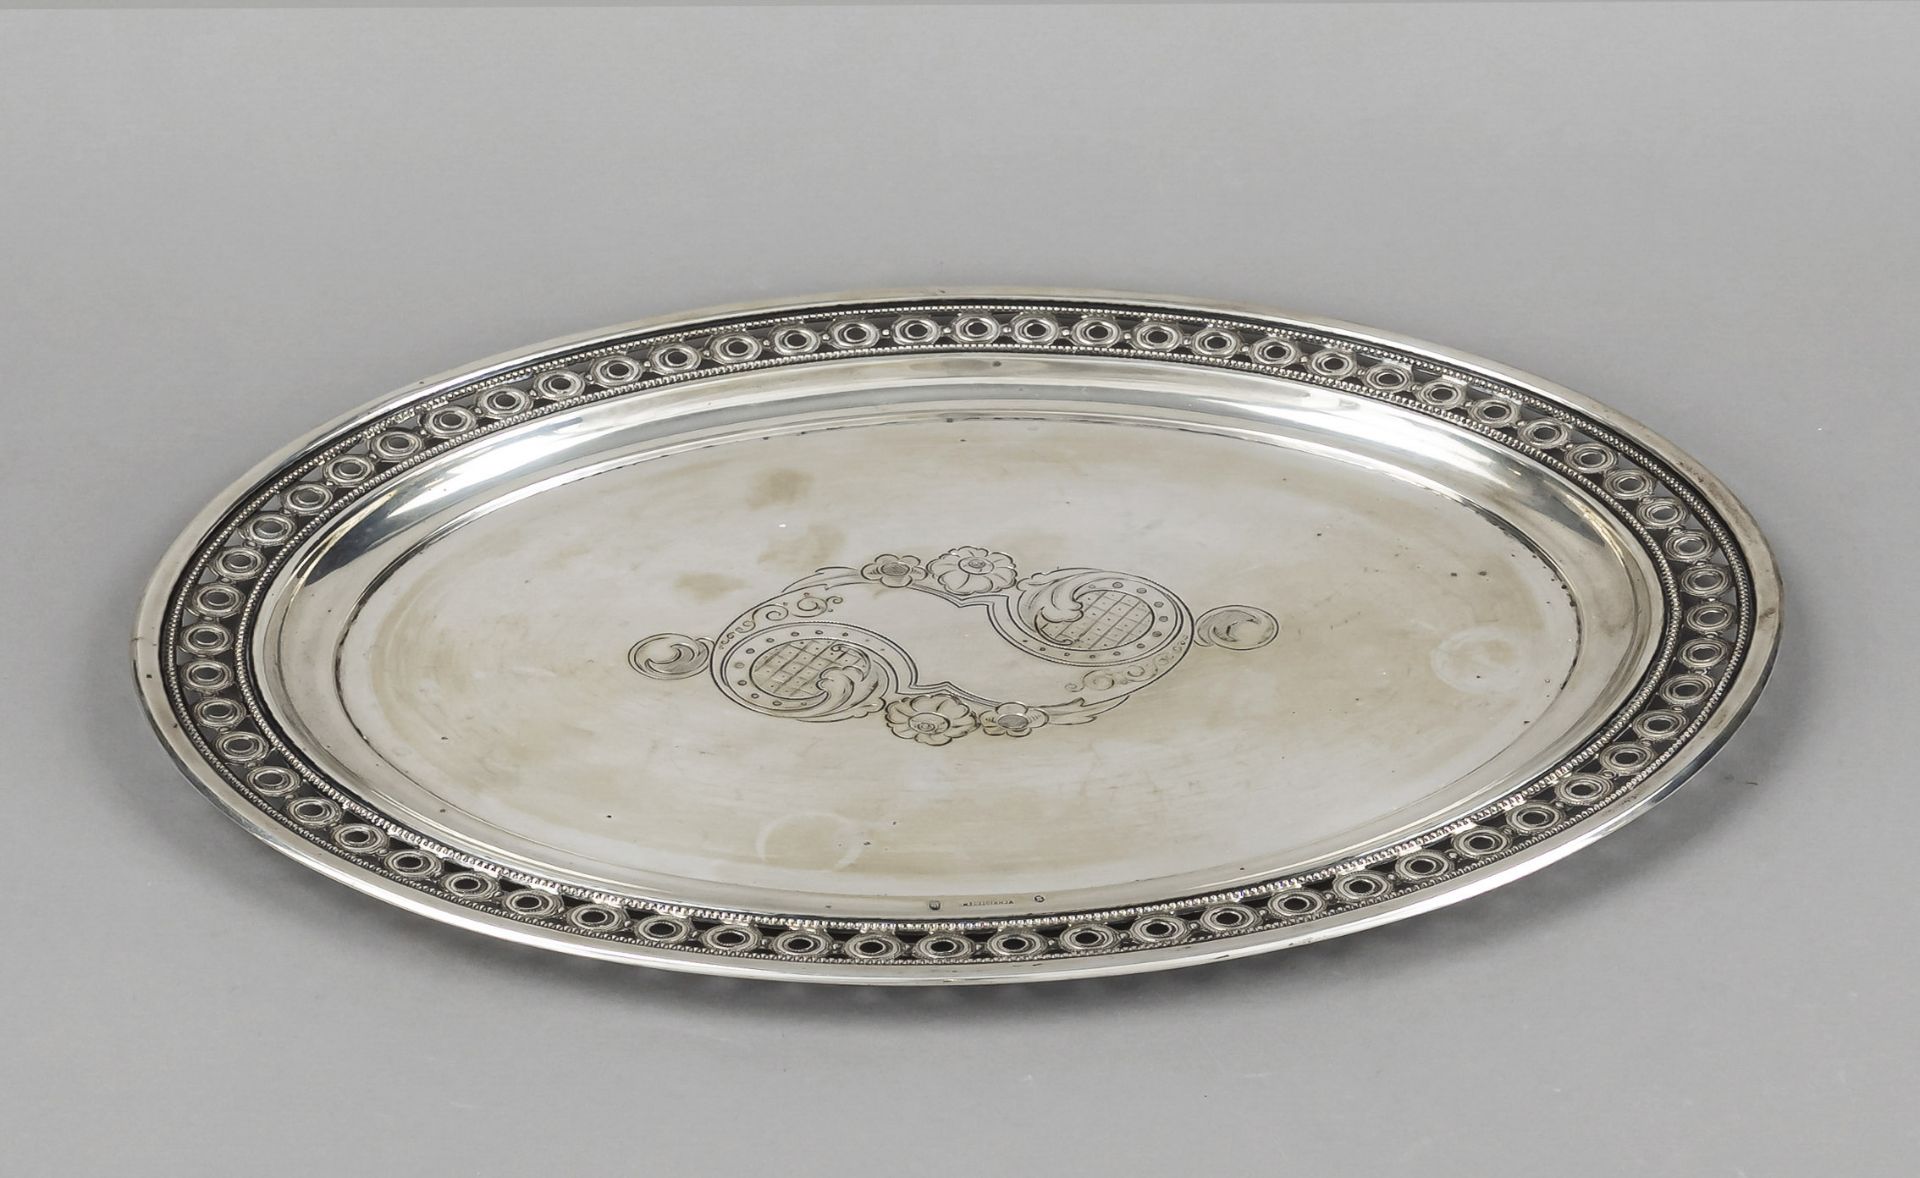 Oval plate, Denmark, 1875, assay mark Simon Groth, maker's mark V. Christesen, Copenhagen, silver